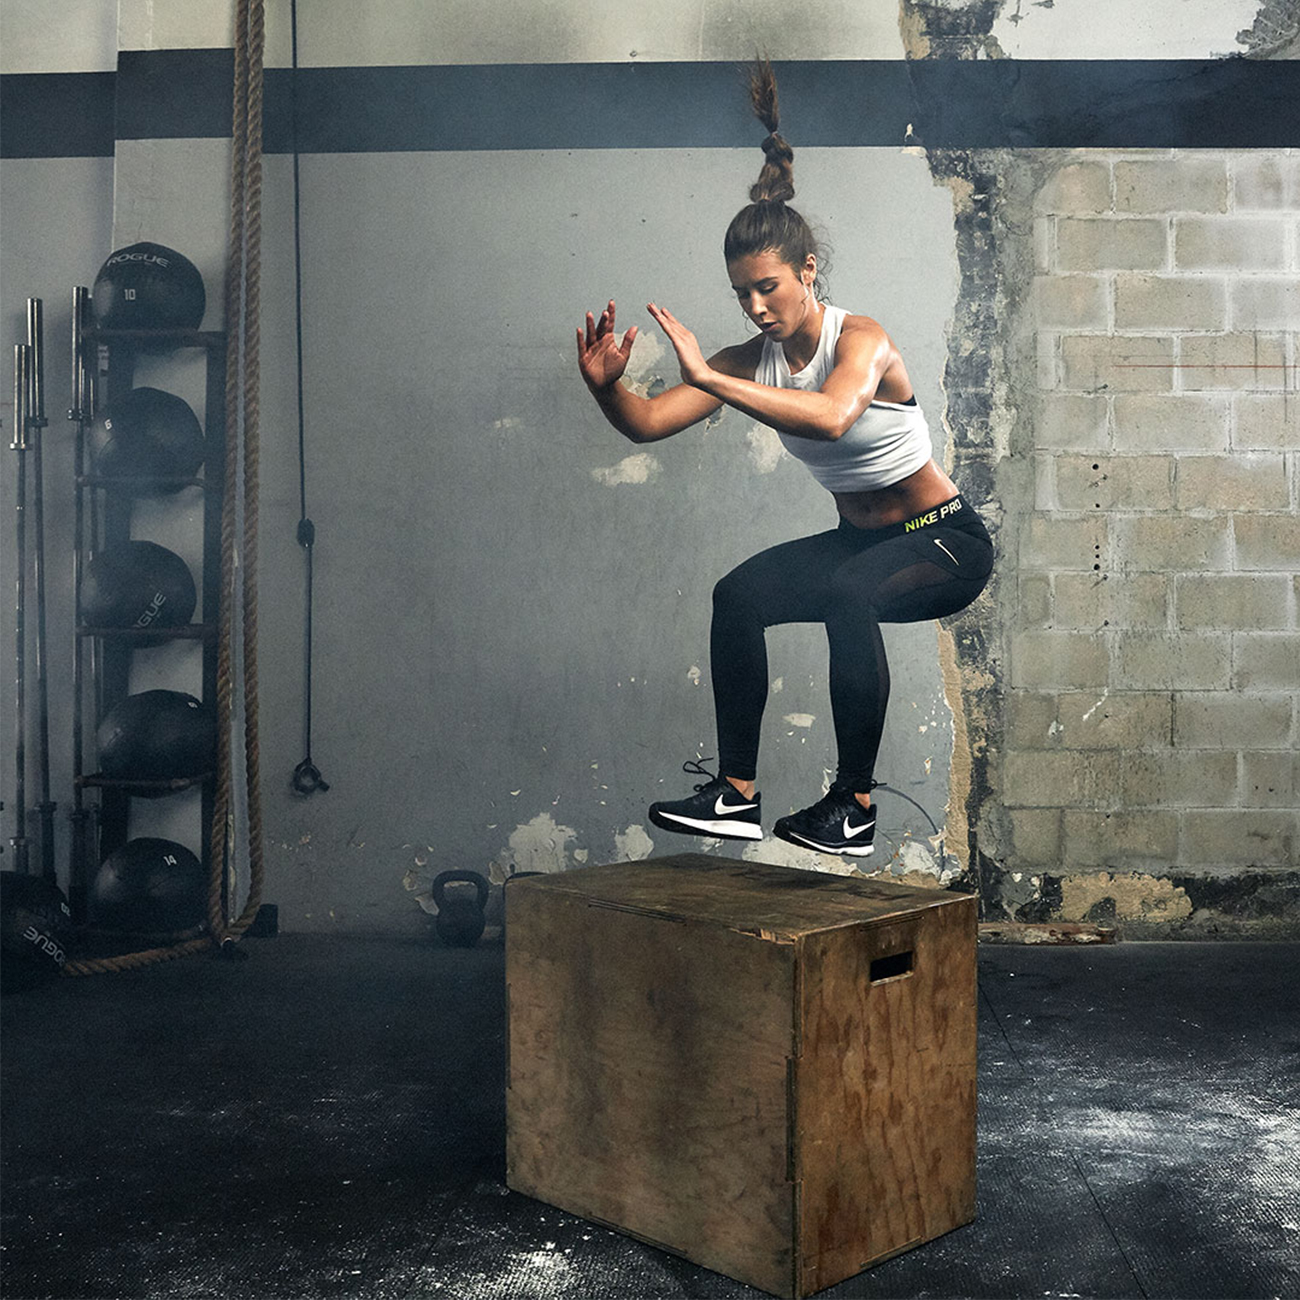 crossfit cvicenie, skákanie na drevenom boxe pocas tréningu v telocvicni.